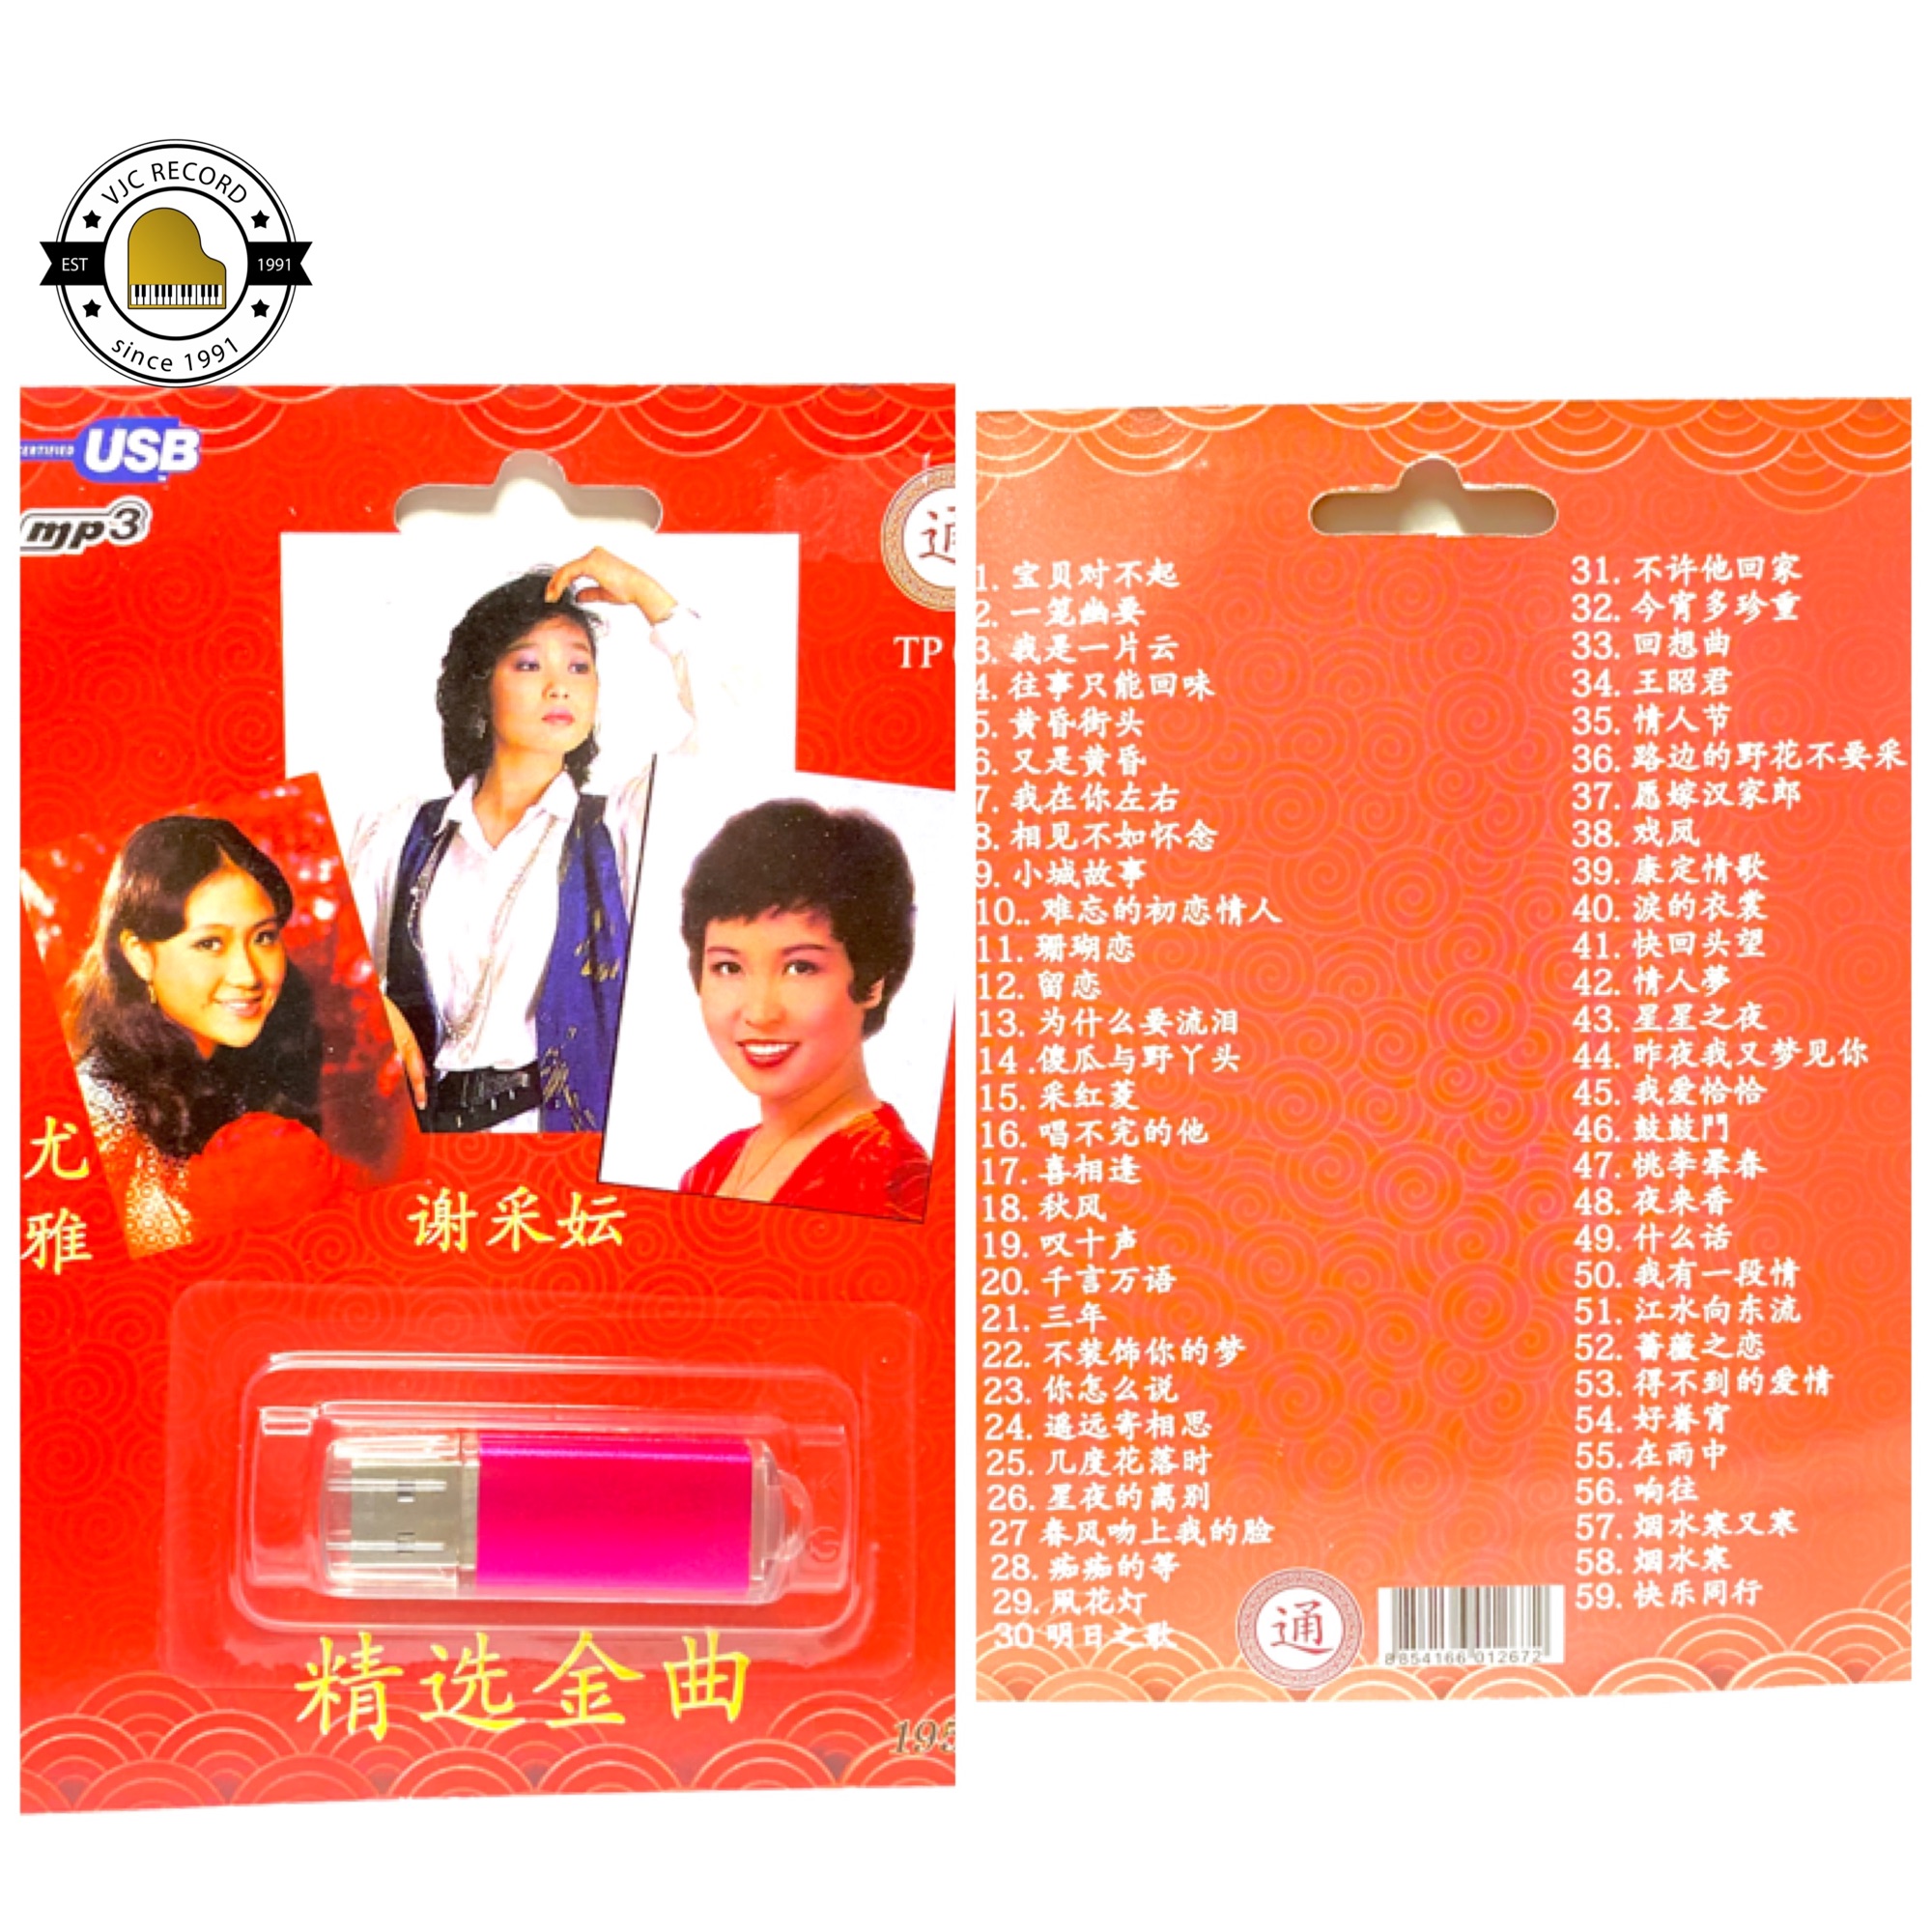 สุดคุ้มเสียบฟังได้เลย!! USB Mp3 แฟลชไดร์ฟ รวมเพลงฮิต เพลงจีนศิลปินหญิงเก่าๆ ปกแดง